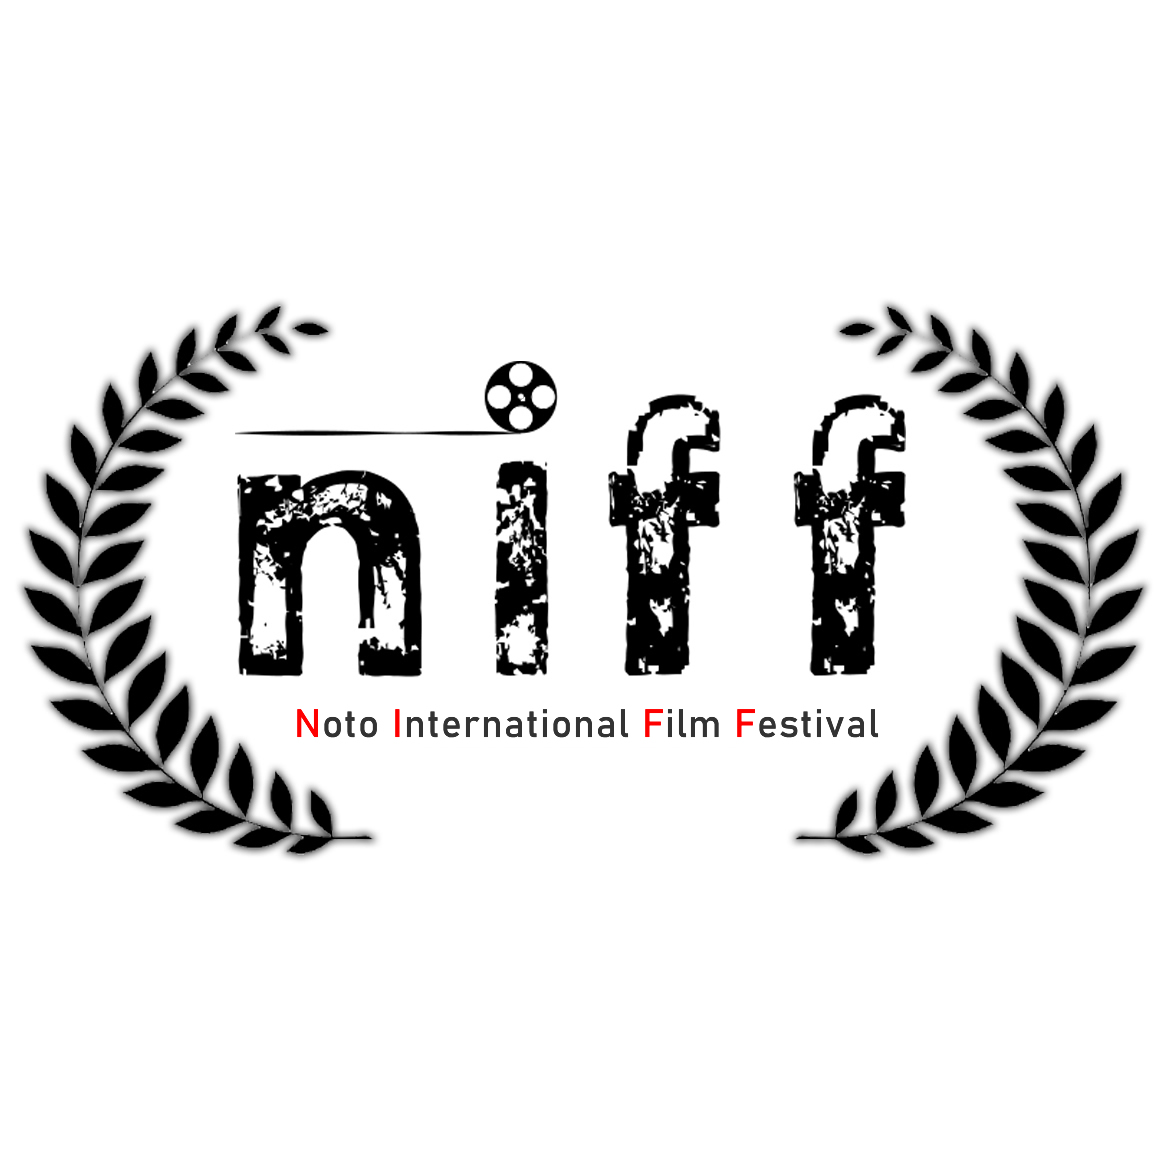  N.I.F.F. Noto International Film Festiva 22 agosto 2020 IV edizione